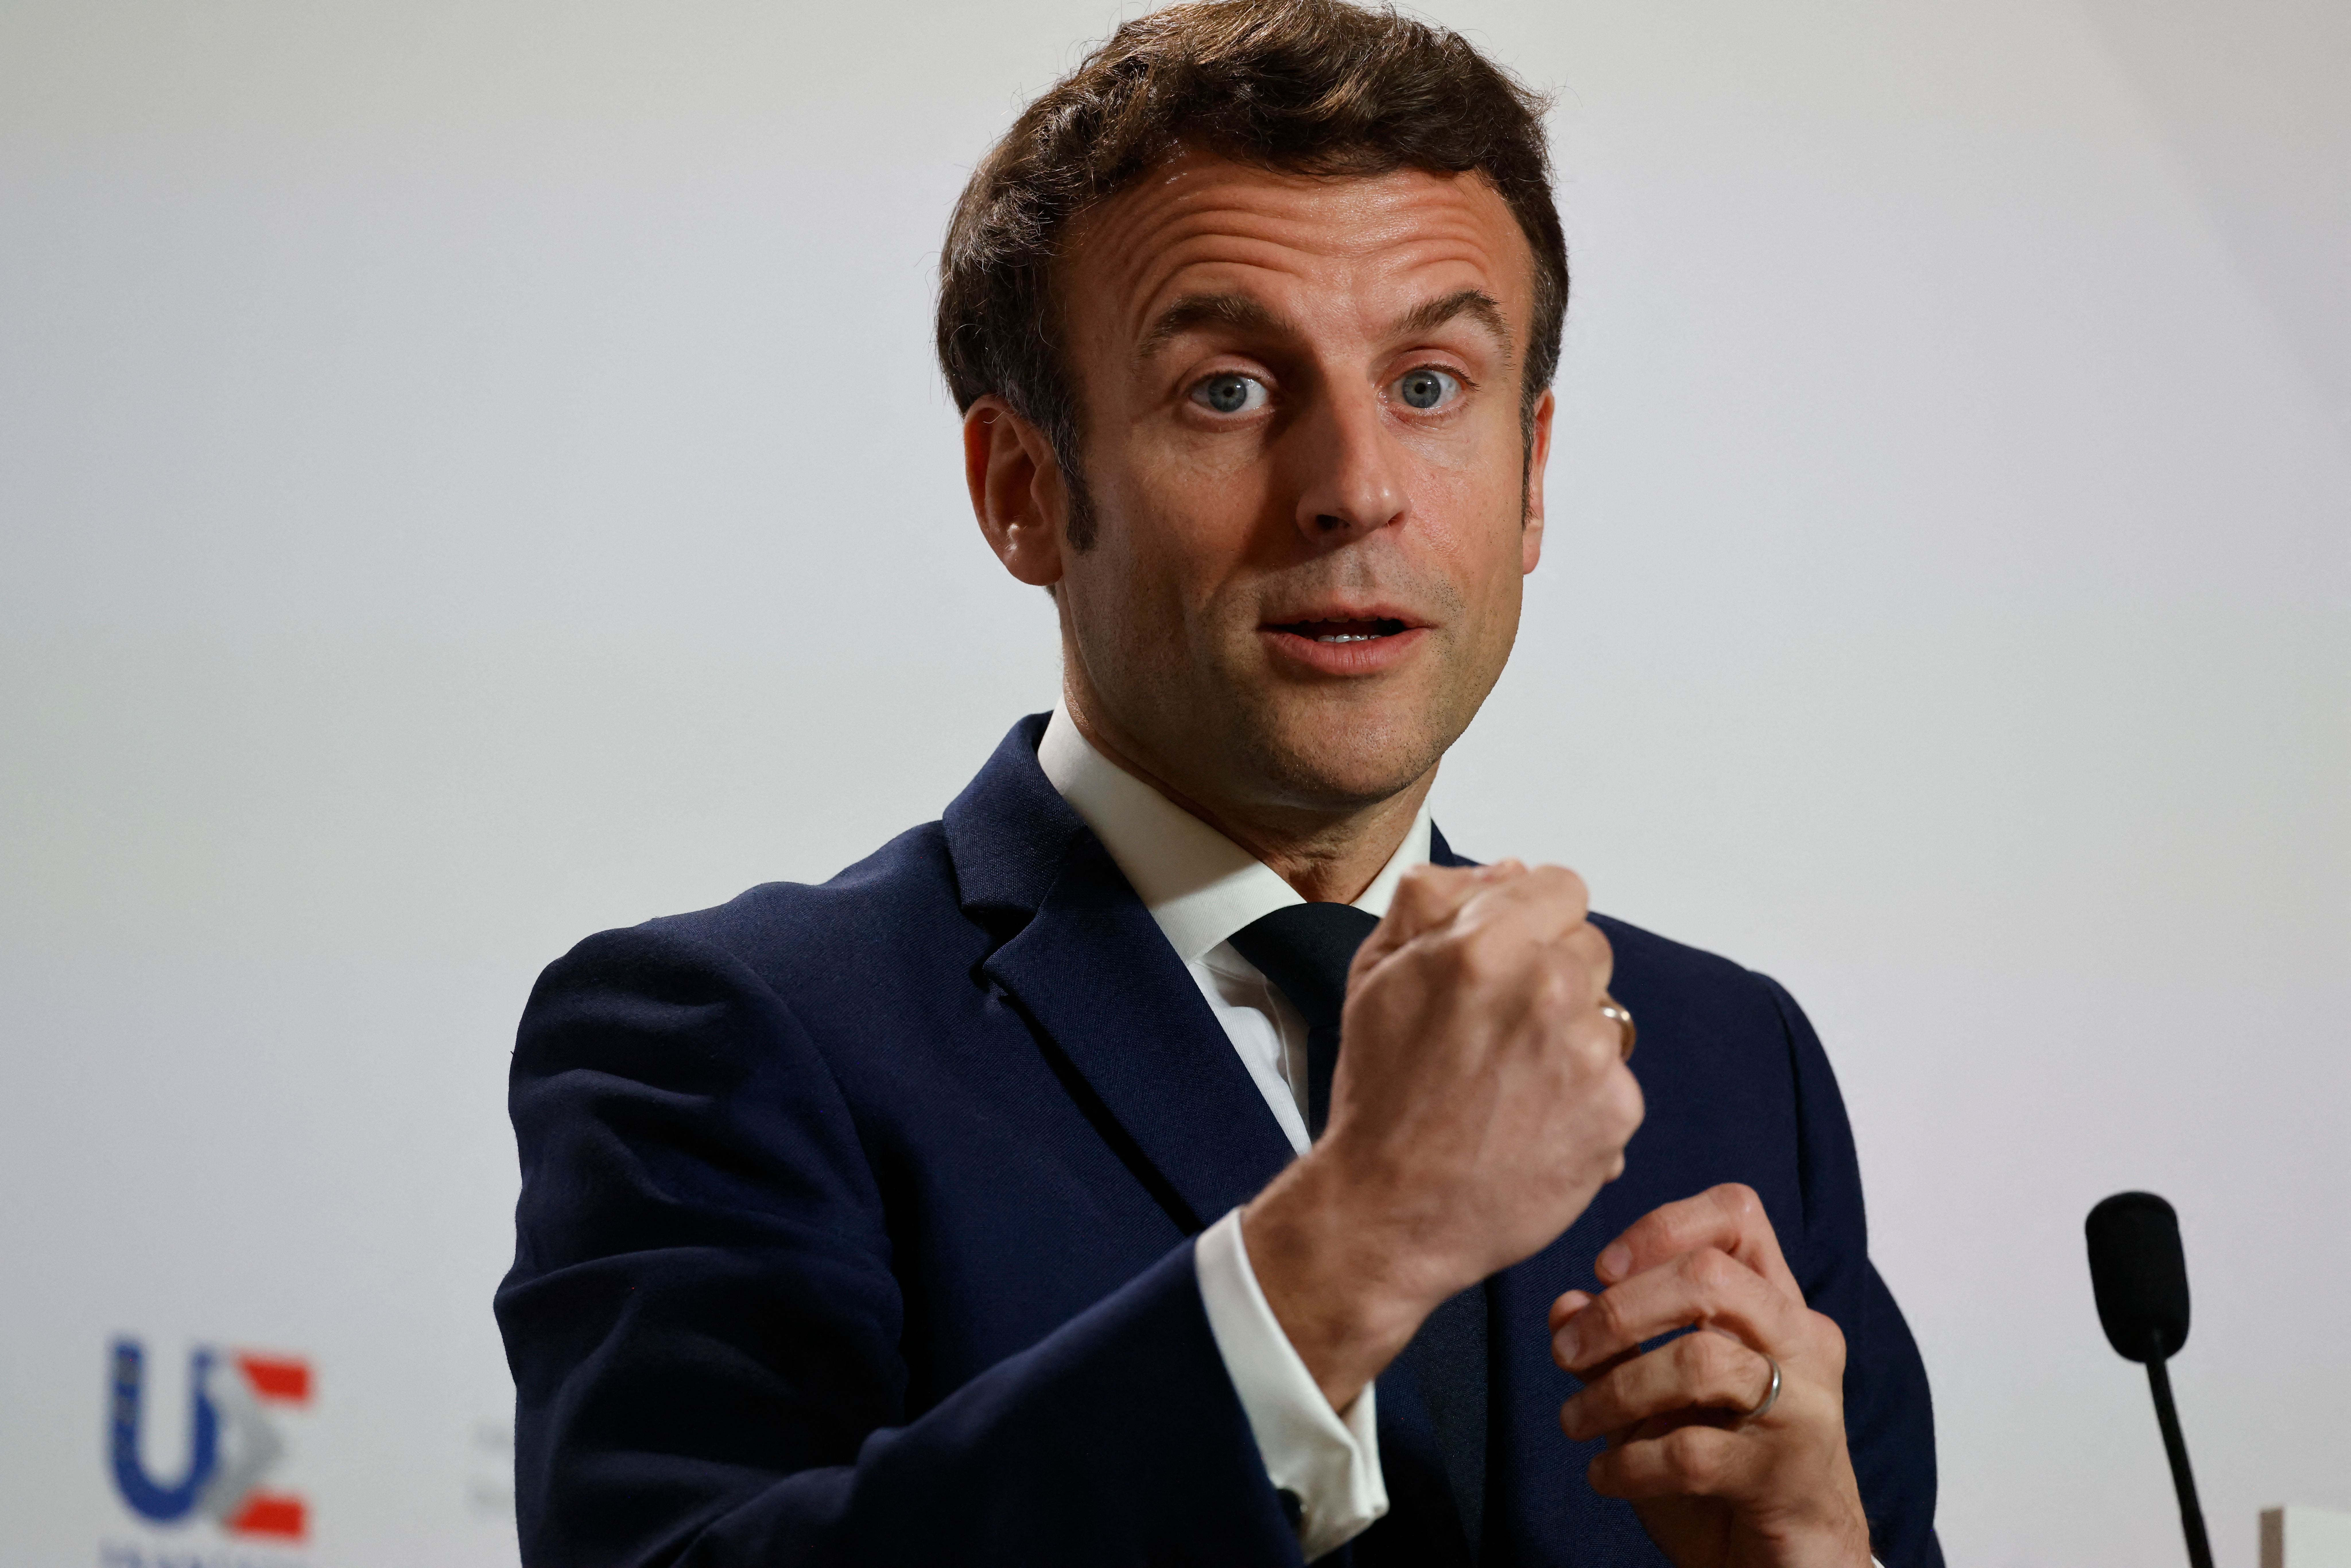 France’s president Emmanuel Macron speaks at a European Union summit in Brussels last week